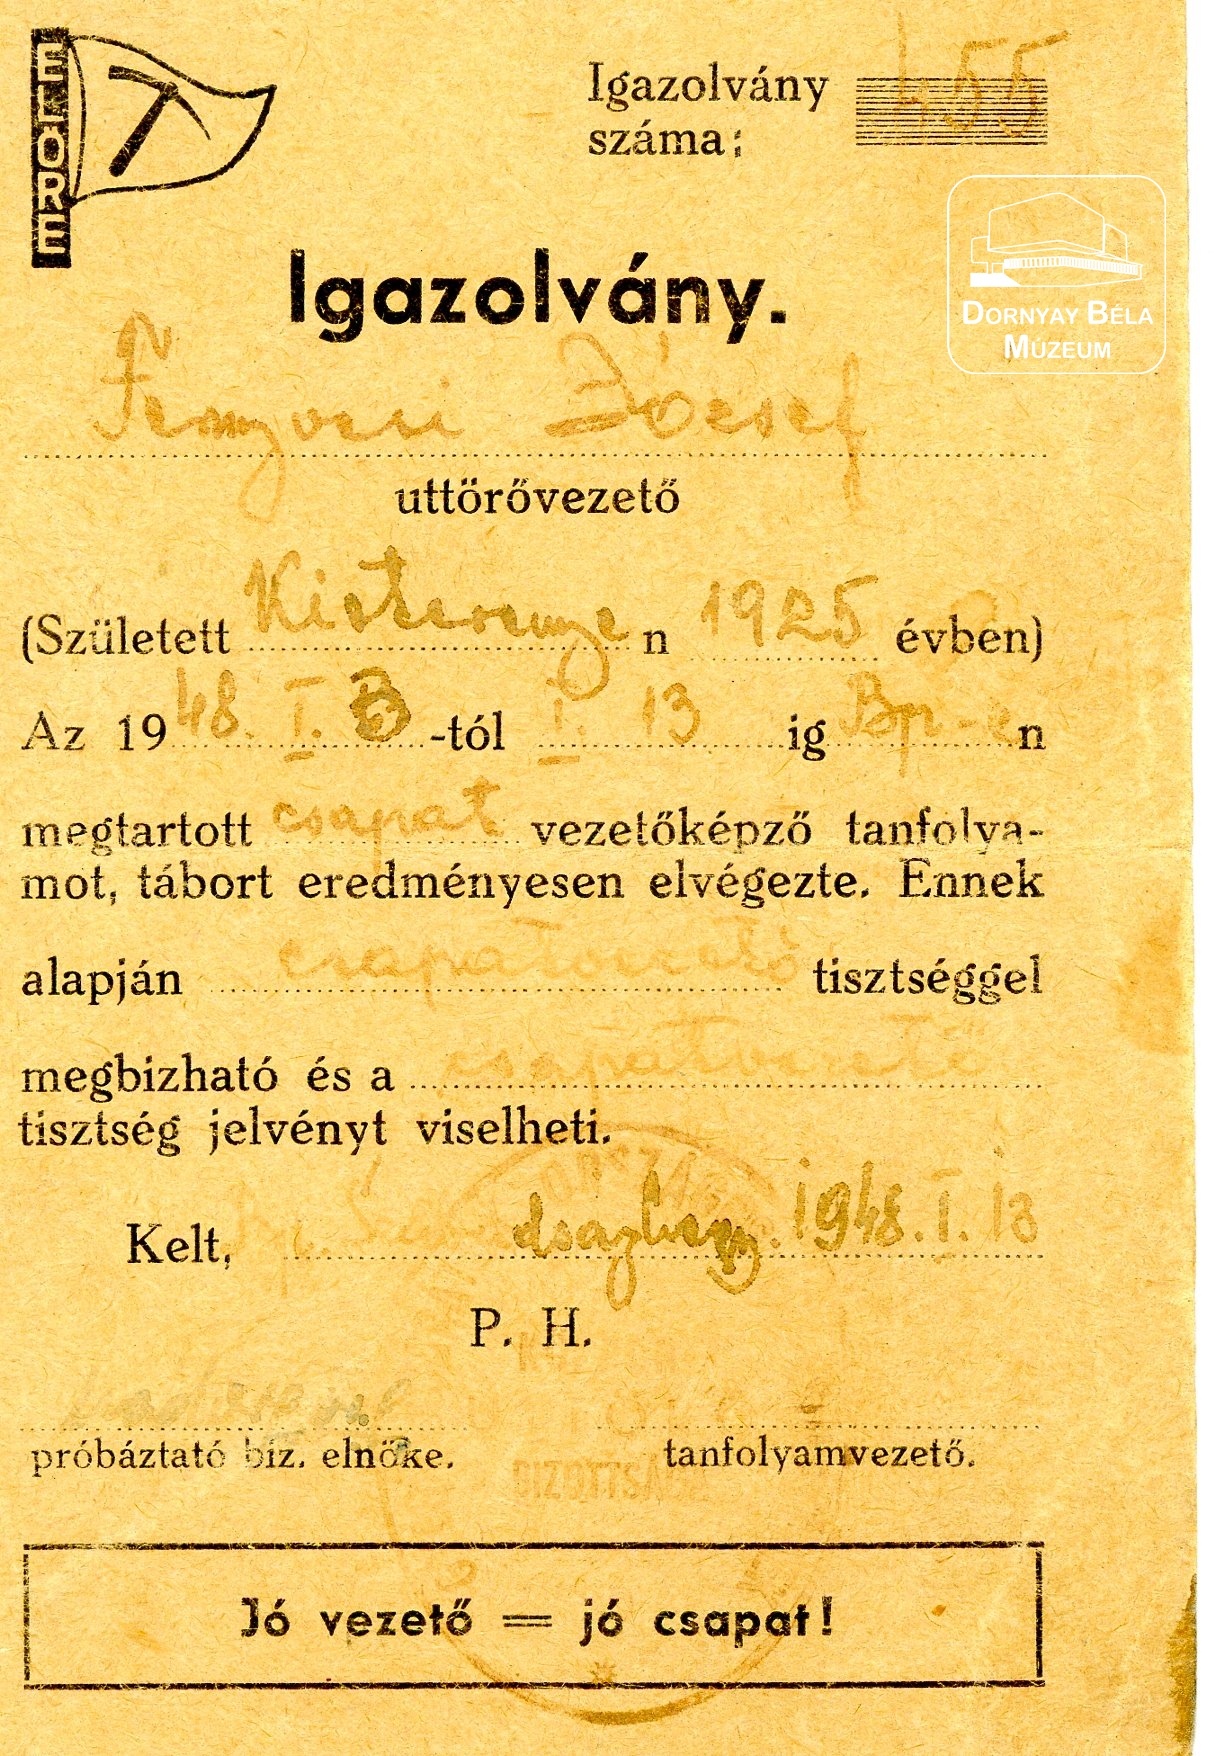 Fenyvesi József úttörővezető igazolványa (Dornyay Béla Múzeum, Salgótarján CC BY-NC-SA)